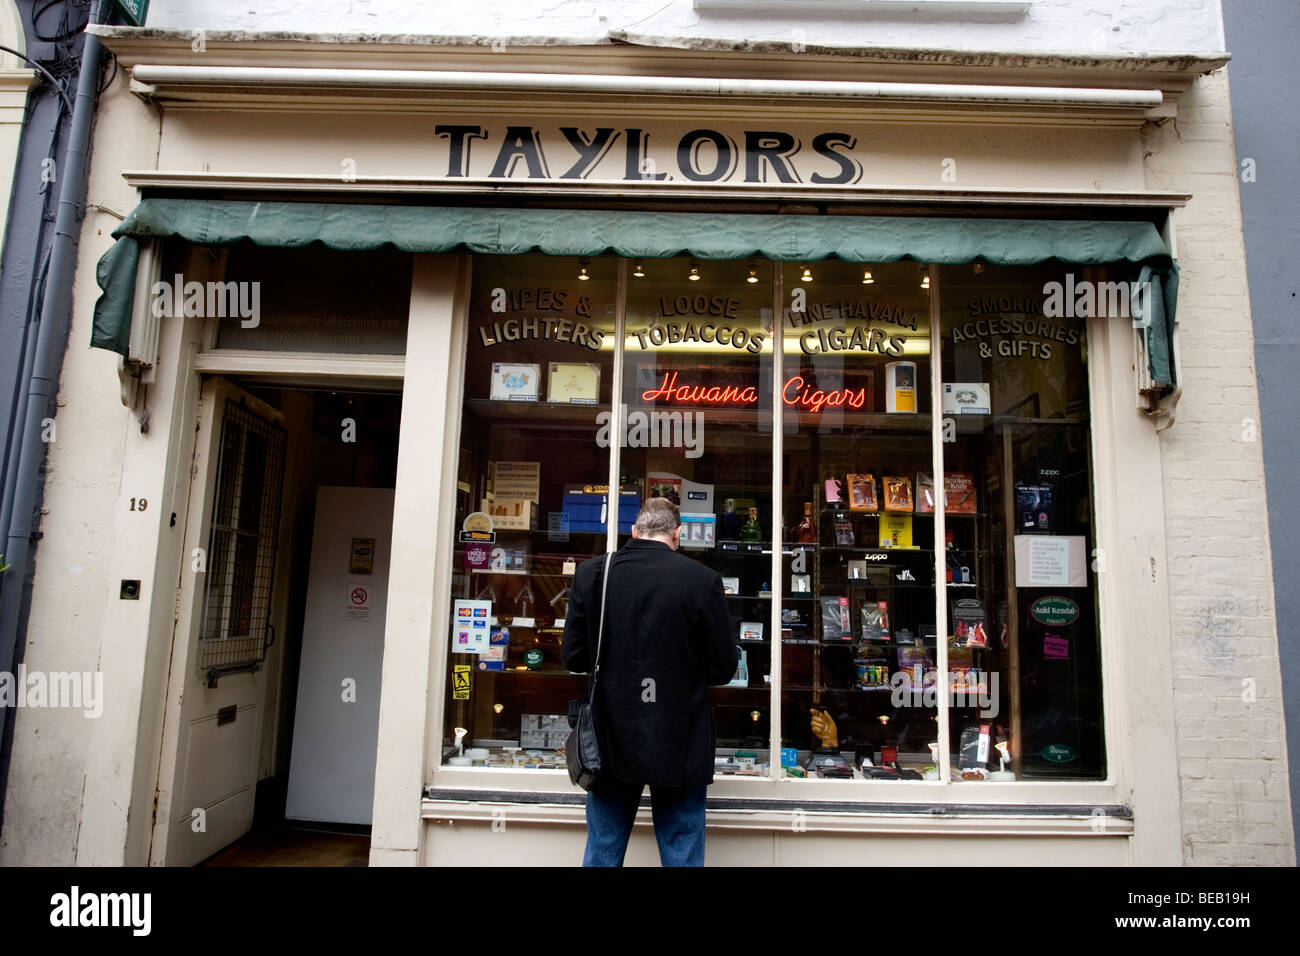 Magasin de vente de tabac Taylors du tabac, des cigarettes et cigares dans Bond Street, Brighton, East Sussex, UK. Banque D'Images